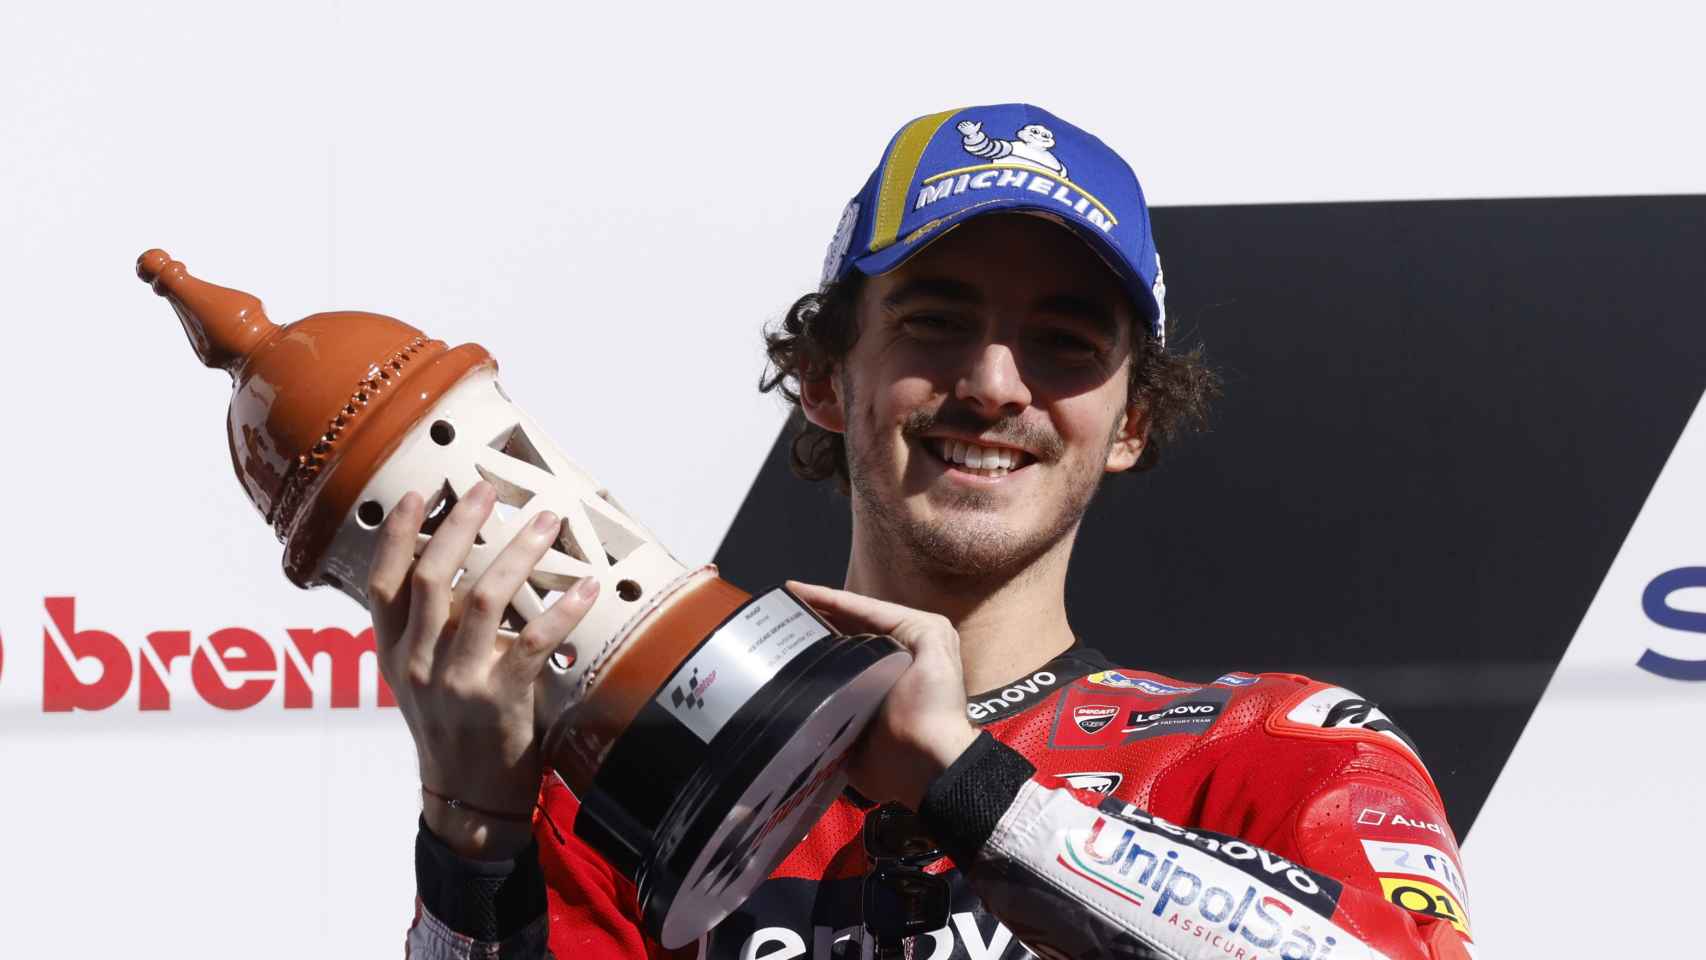 Pecco Bagnaia levanta el trofeo de ganado del Gran Premio del Algarve, en Portimao.